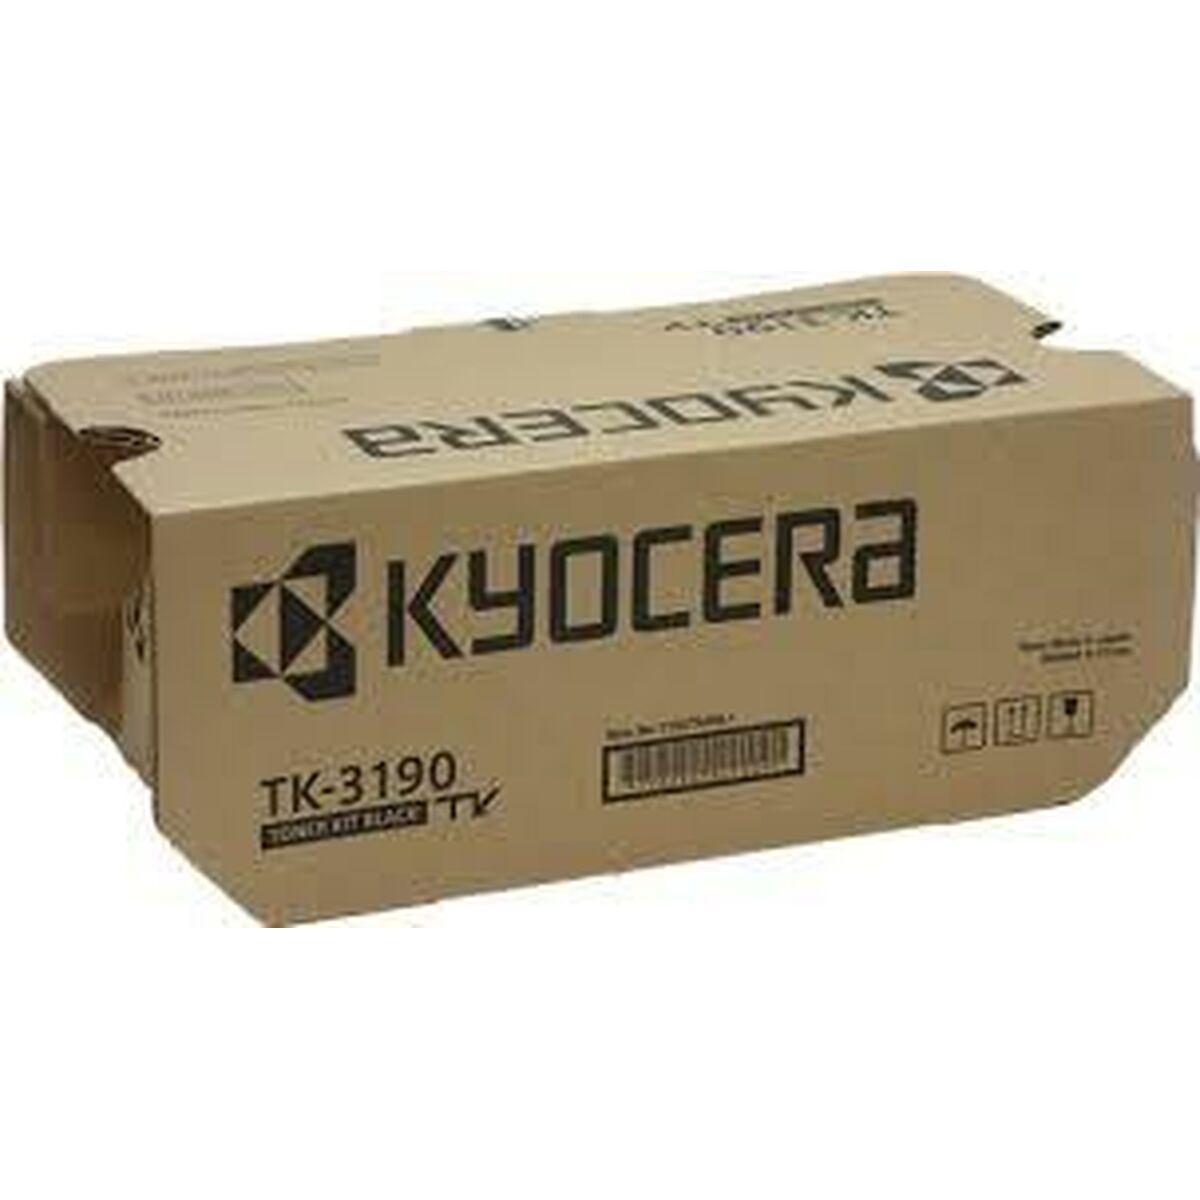 Se Kyocera TK-3190 Sort Lasertoner Original hos Boligcenter.dk